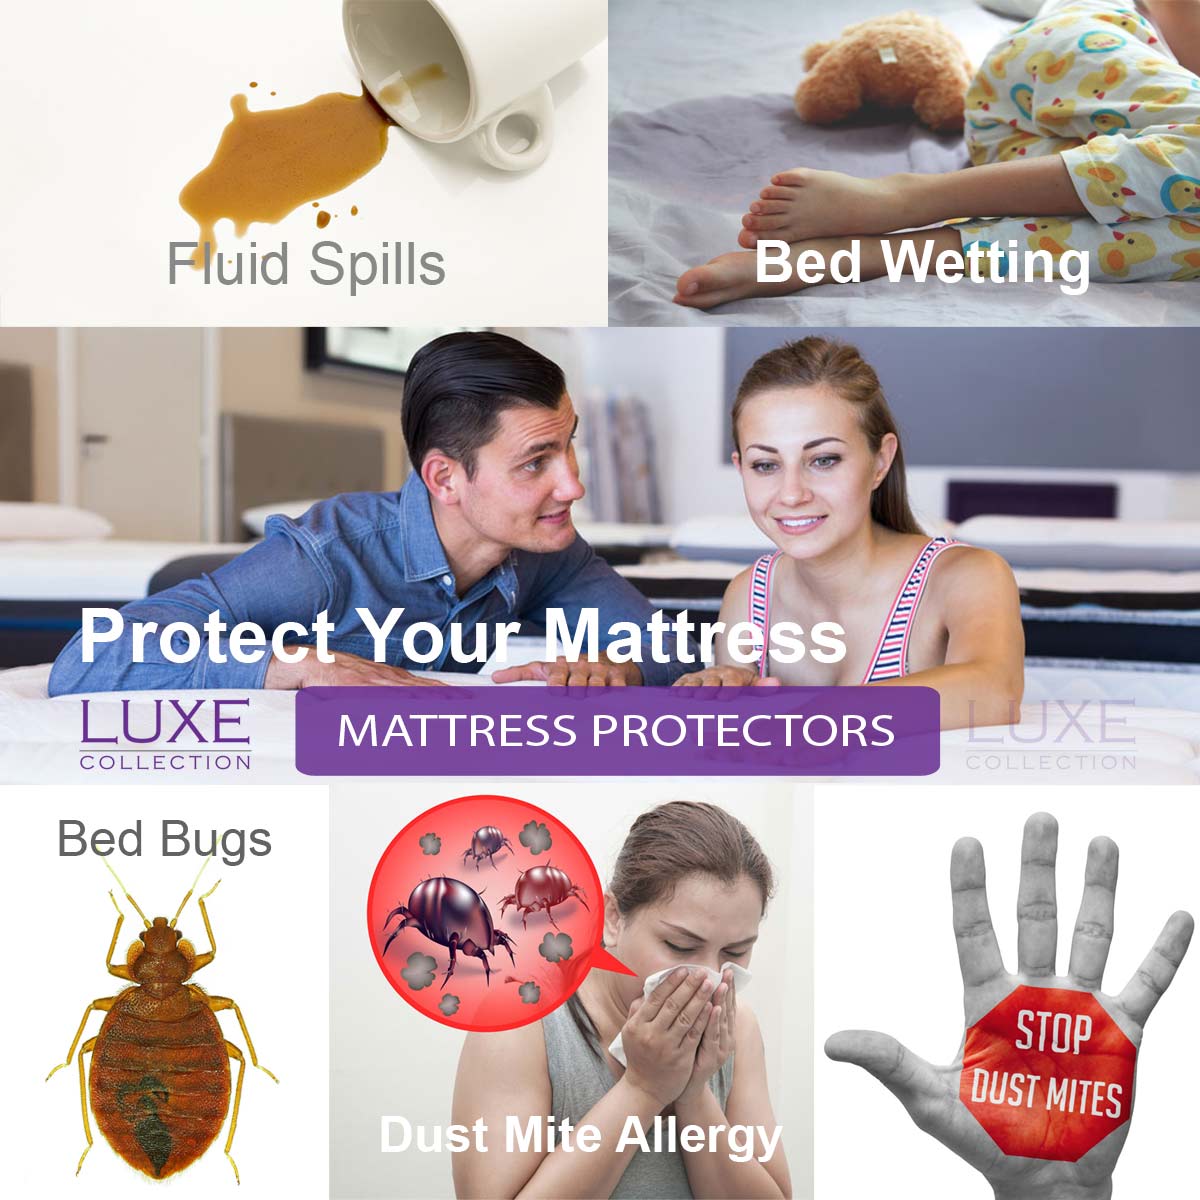 Mattress Protectors